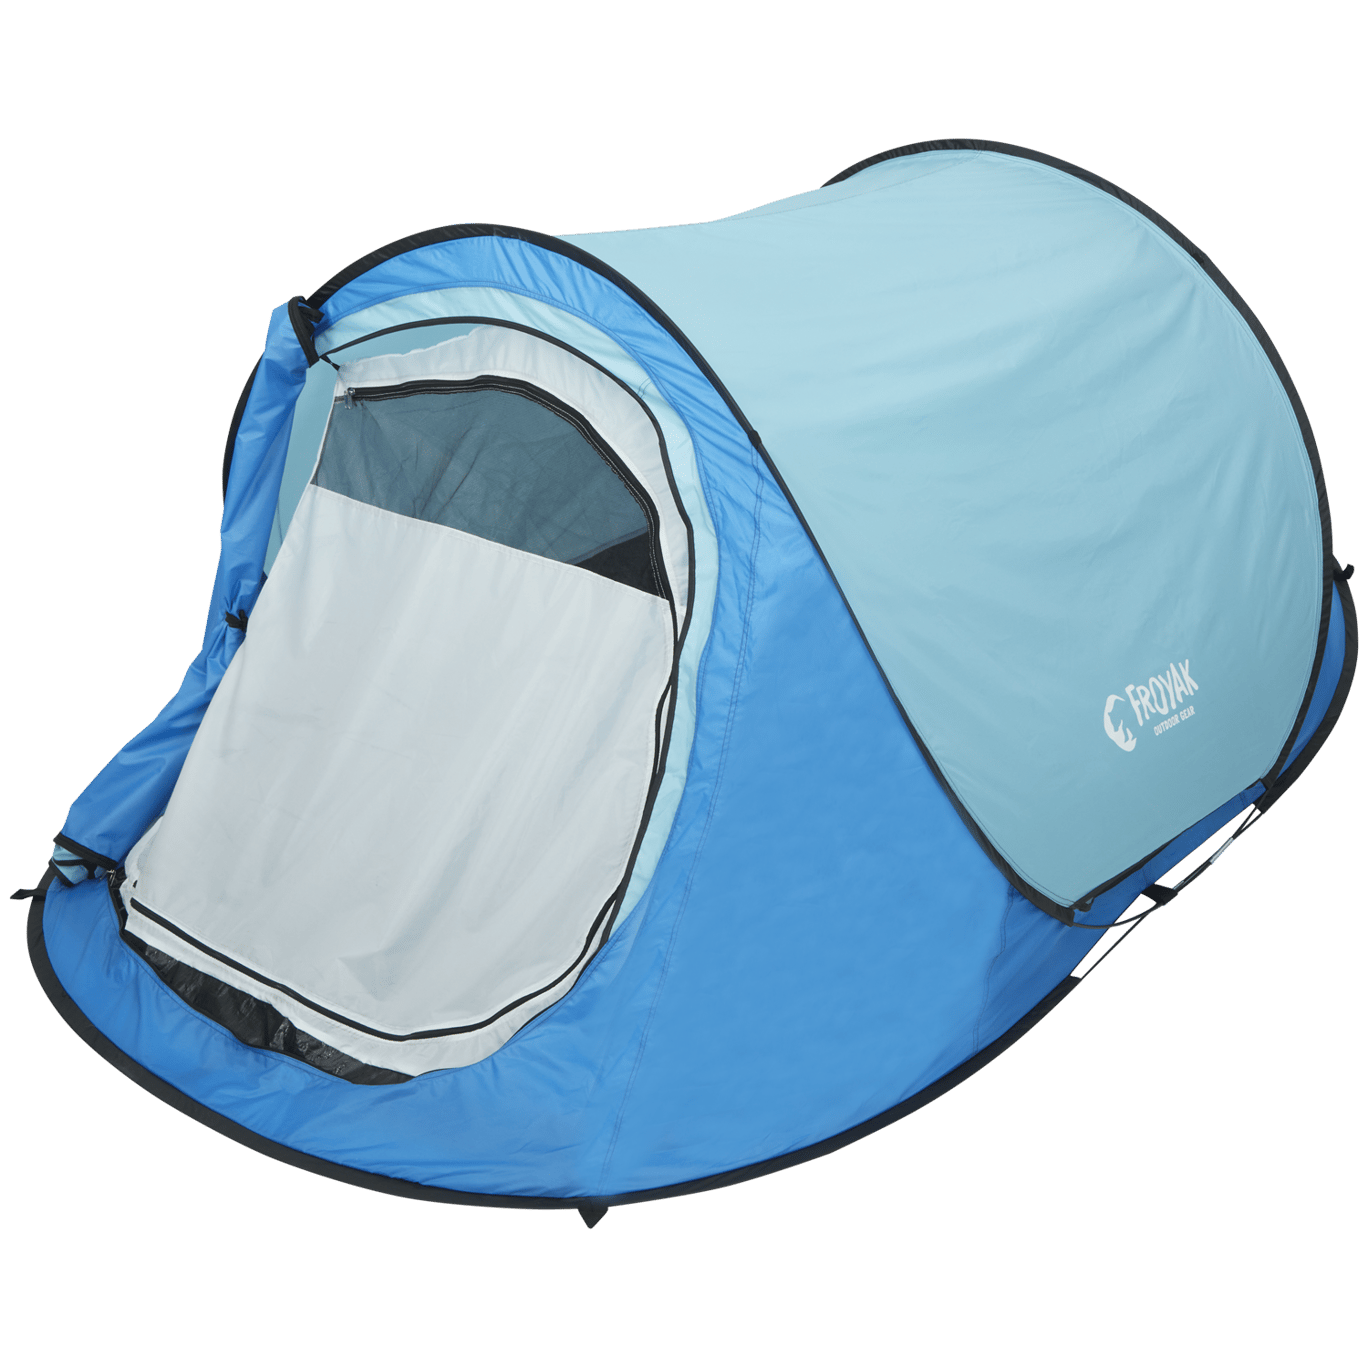 Froyak pop-up tent